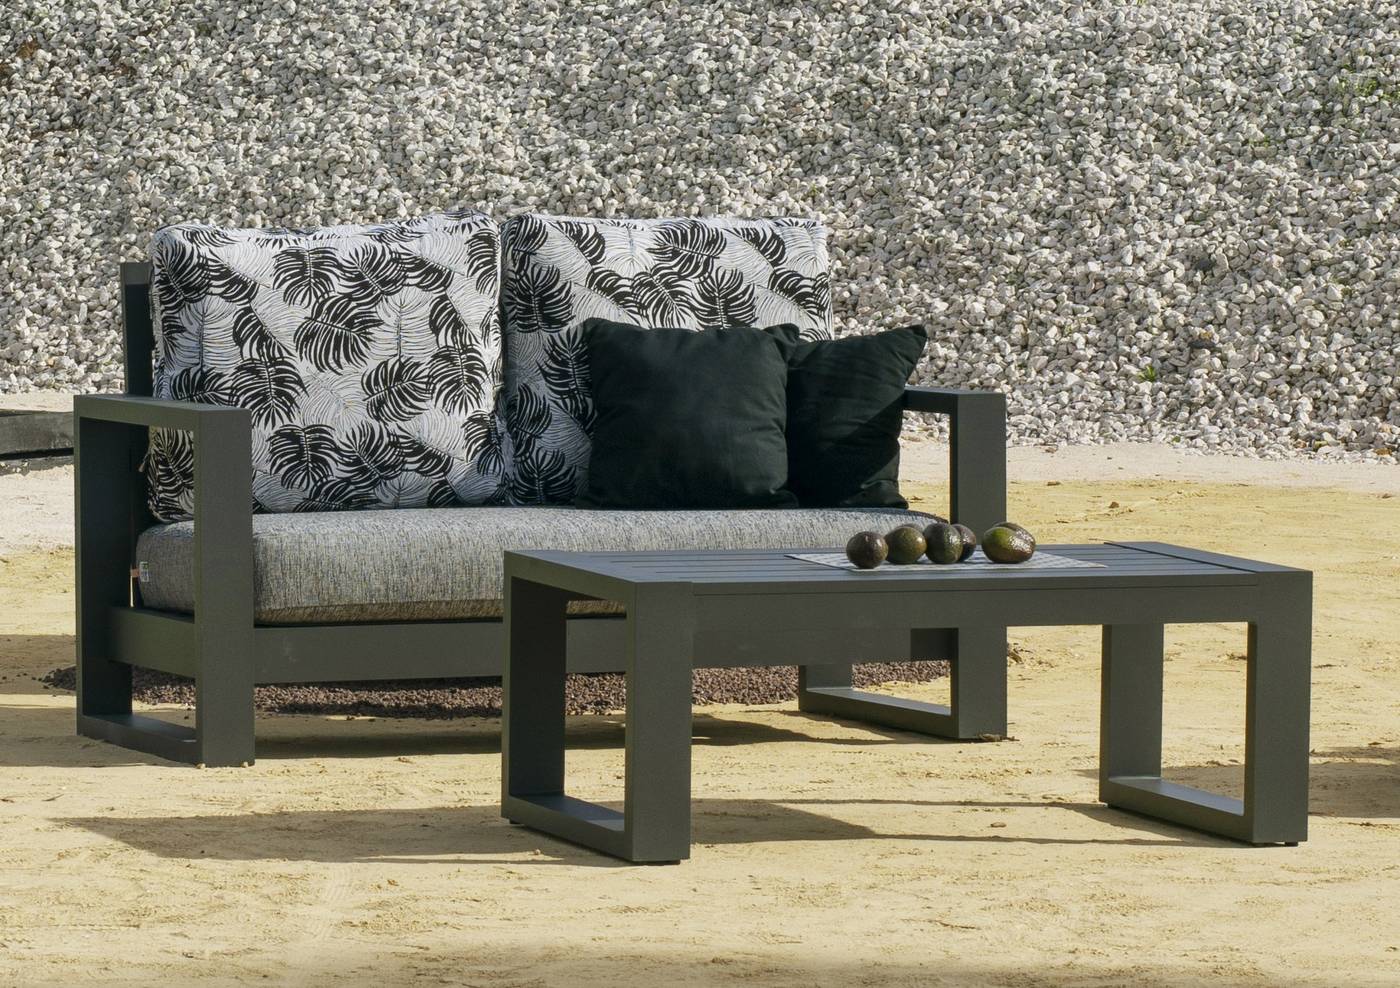 Set Aluminio Luxe Cartago-7 - Conjunto lujoso y robusto de aluminio: 1 sofá de 2 plazas + 2 sillones + 1 mesa de centro + cojines.